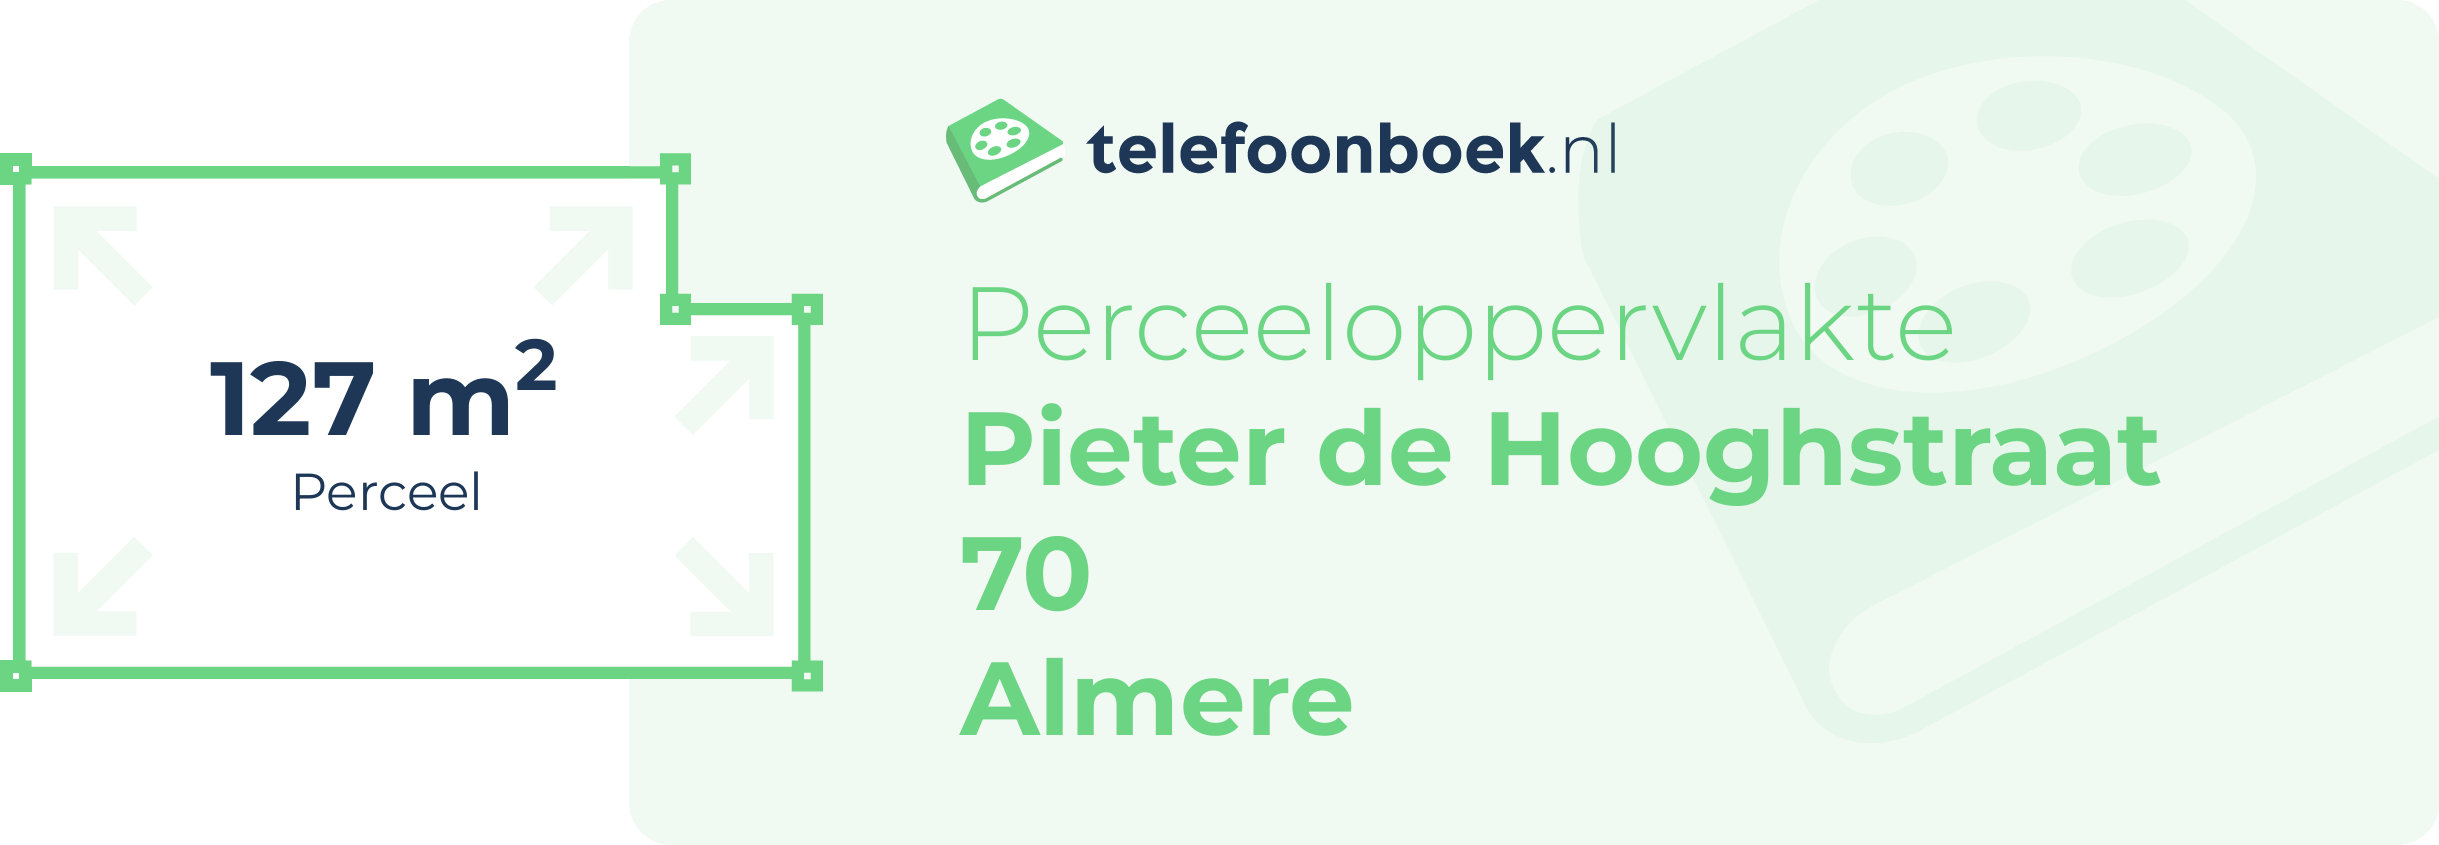 Perceeloppervlakte Pieter De Hooghstraat 70 Almere